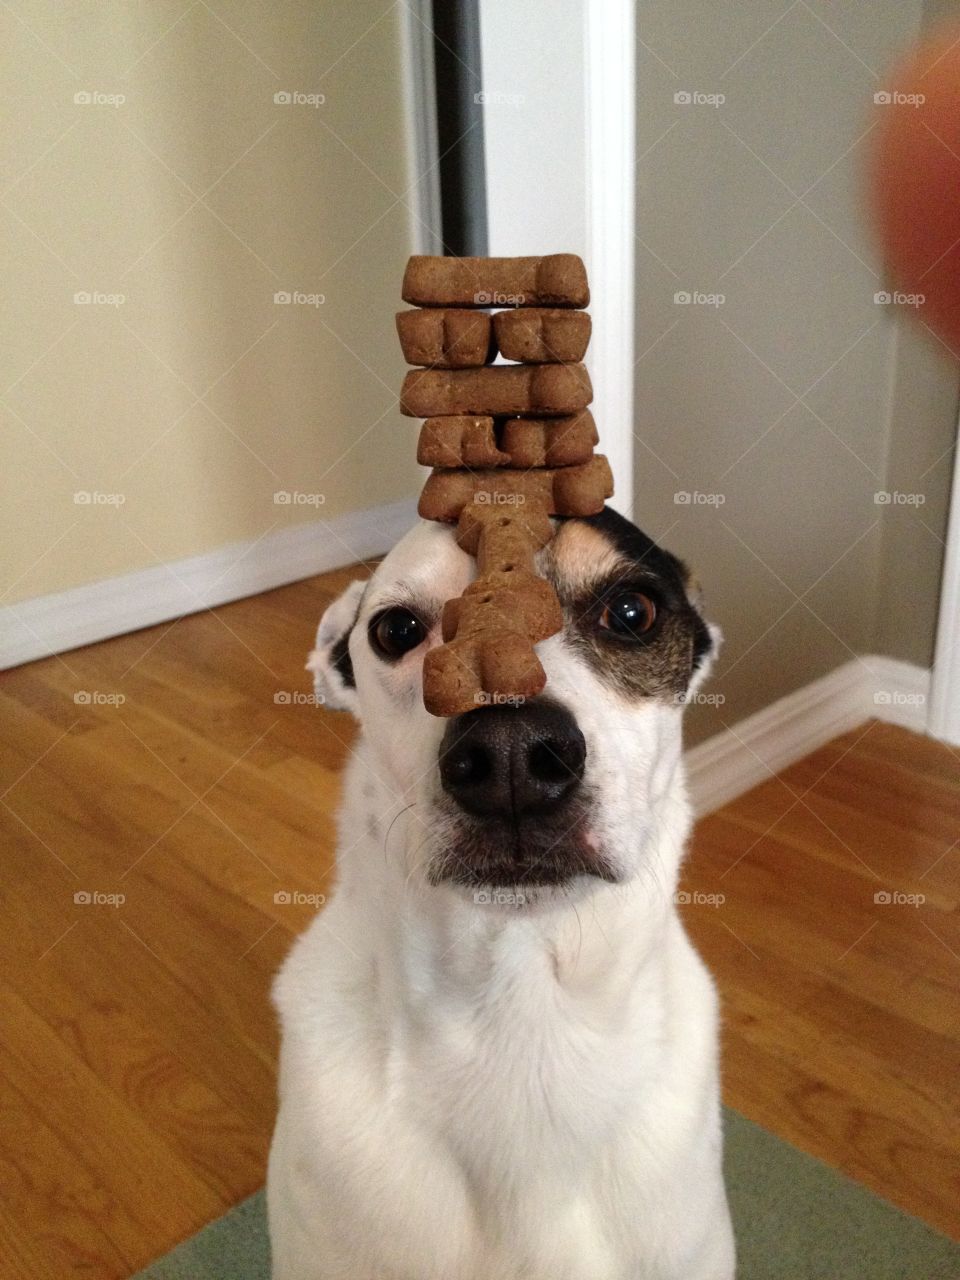 Balancing . Dog balancing treats on head